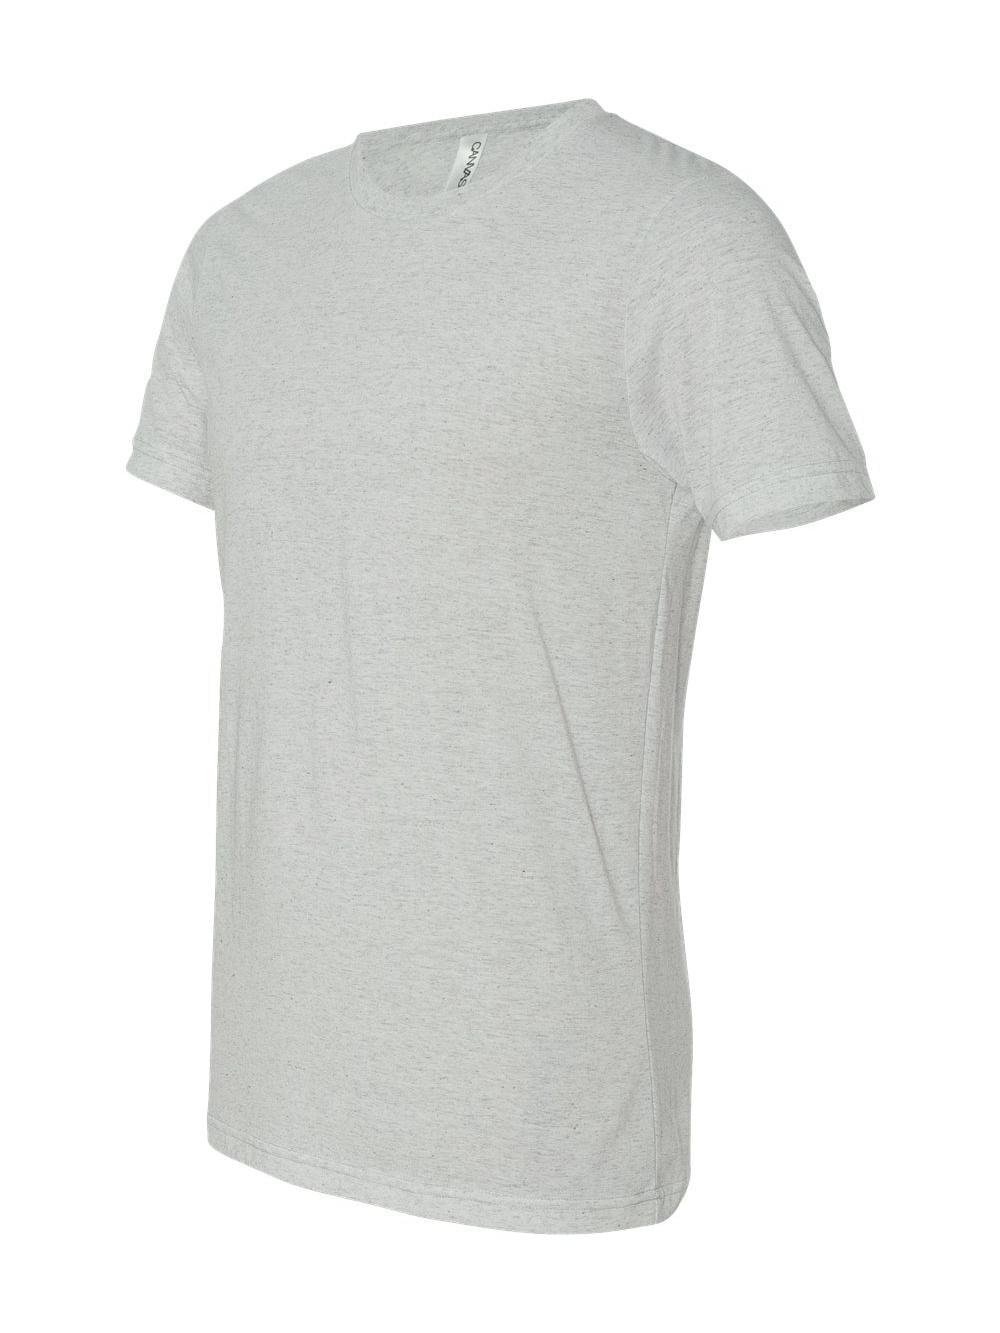 Triblend - - 2XL OATMEAL T-Shirt TRIBLEND Unisex